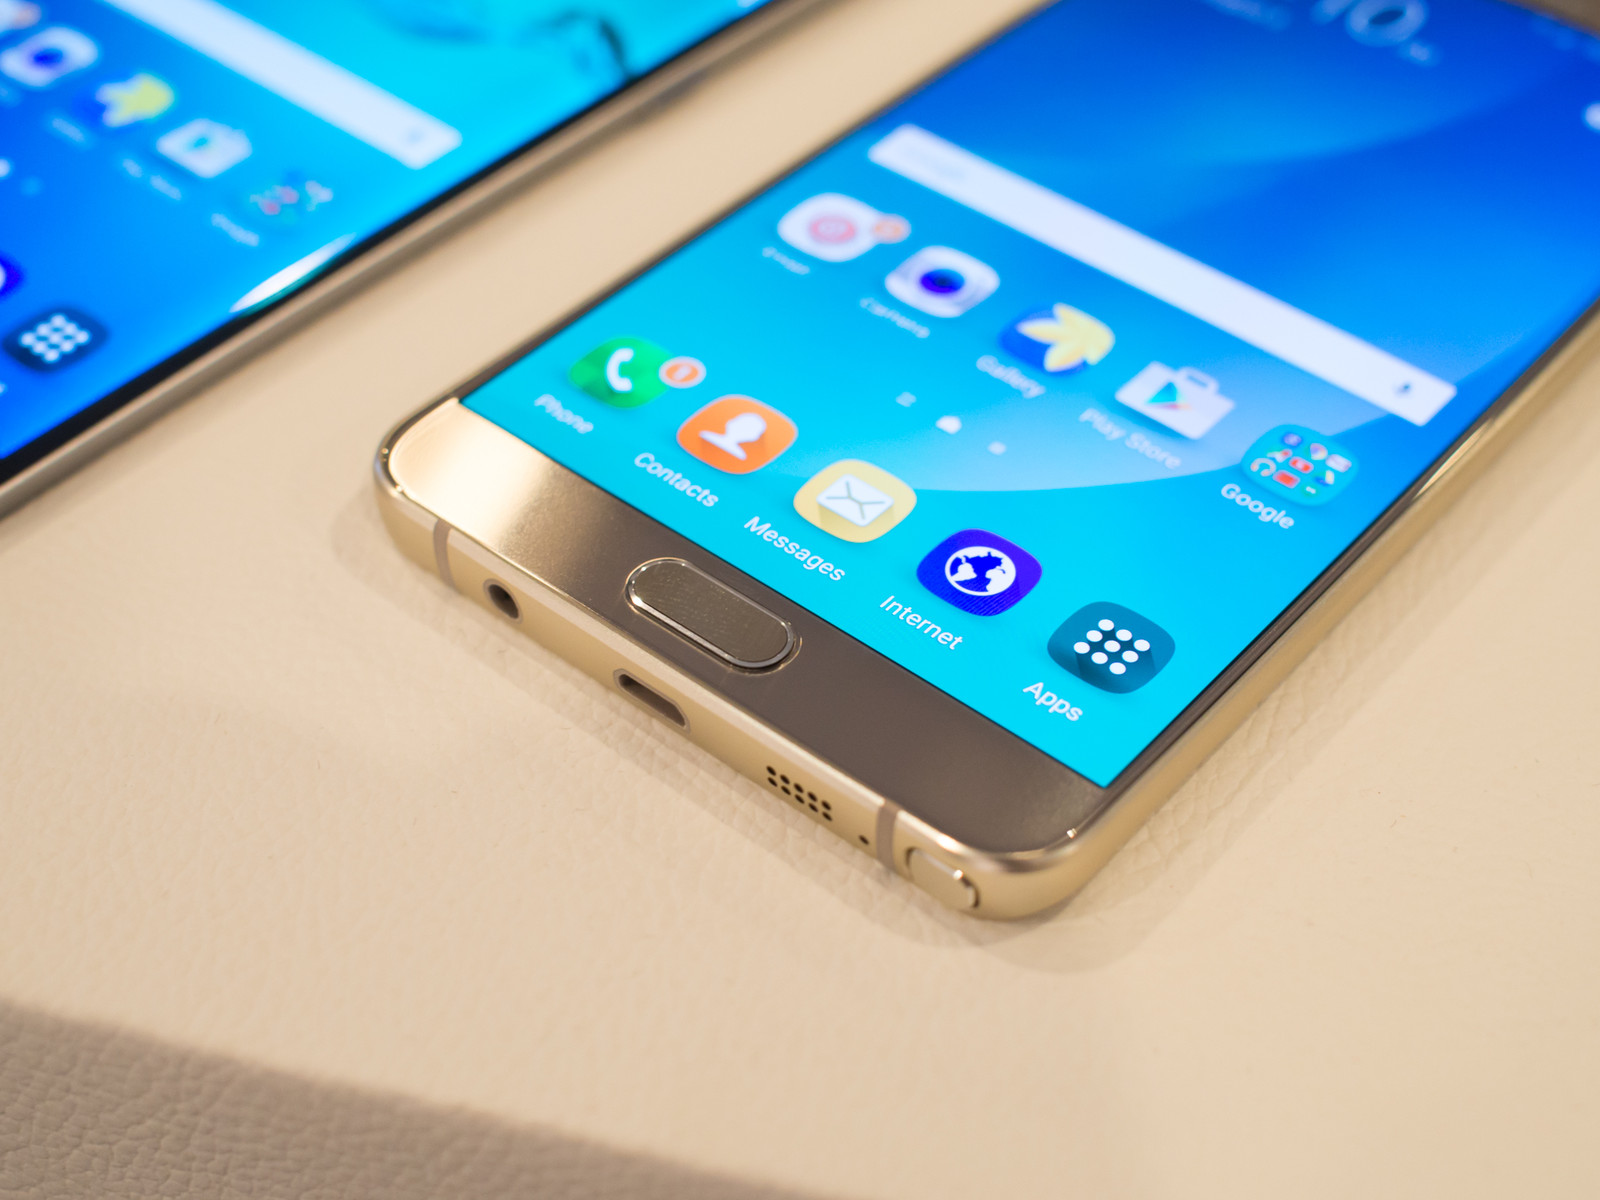 ข่าวลือมาอีกแล้ว!! Samsung Galaxy Note 5 จะวางจำหน่ายในยุโรปต้นปี 2016